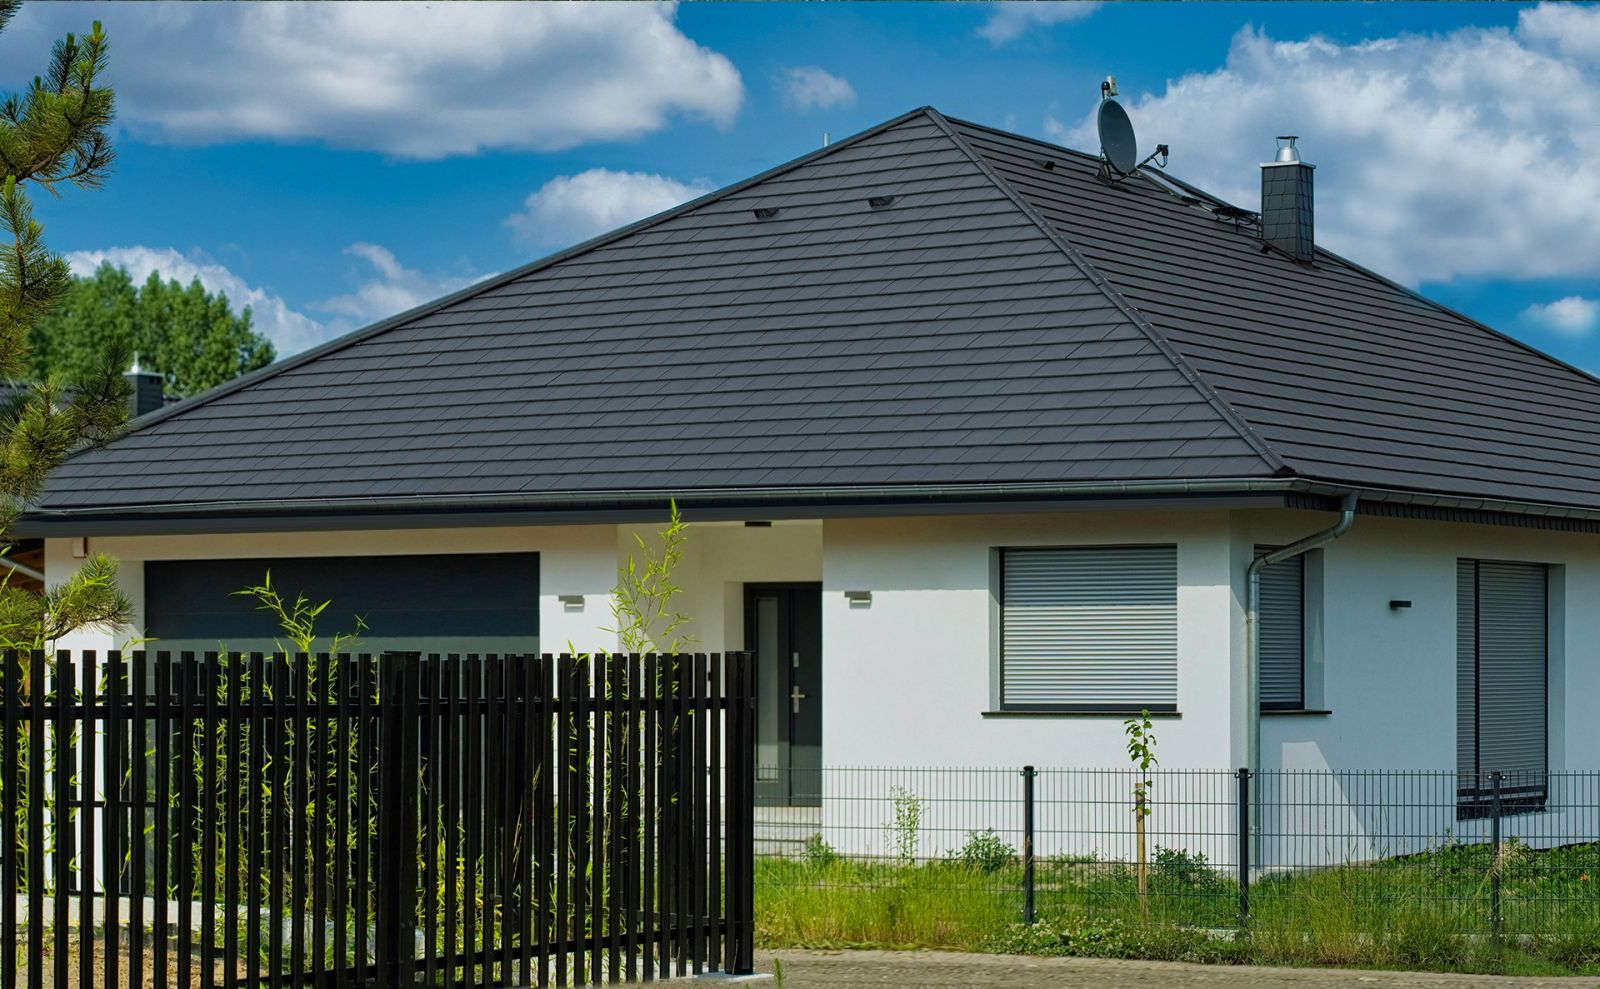 Dachówki cementowe marki CREATON mają specjalną budowę, między innymi rowki kapilarne na całej długości dachówki, które zapobiegają podciąganiu wody (fot. CREATON, na zdjęciu model KAPSTADT)